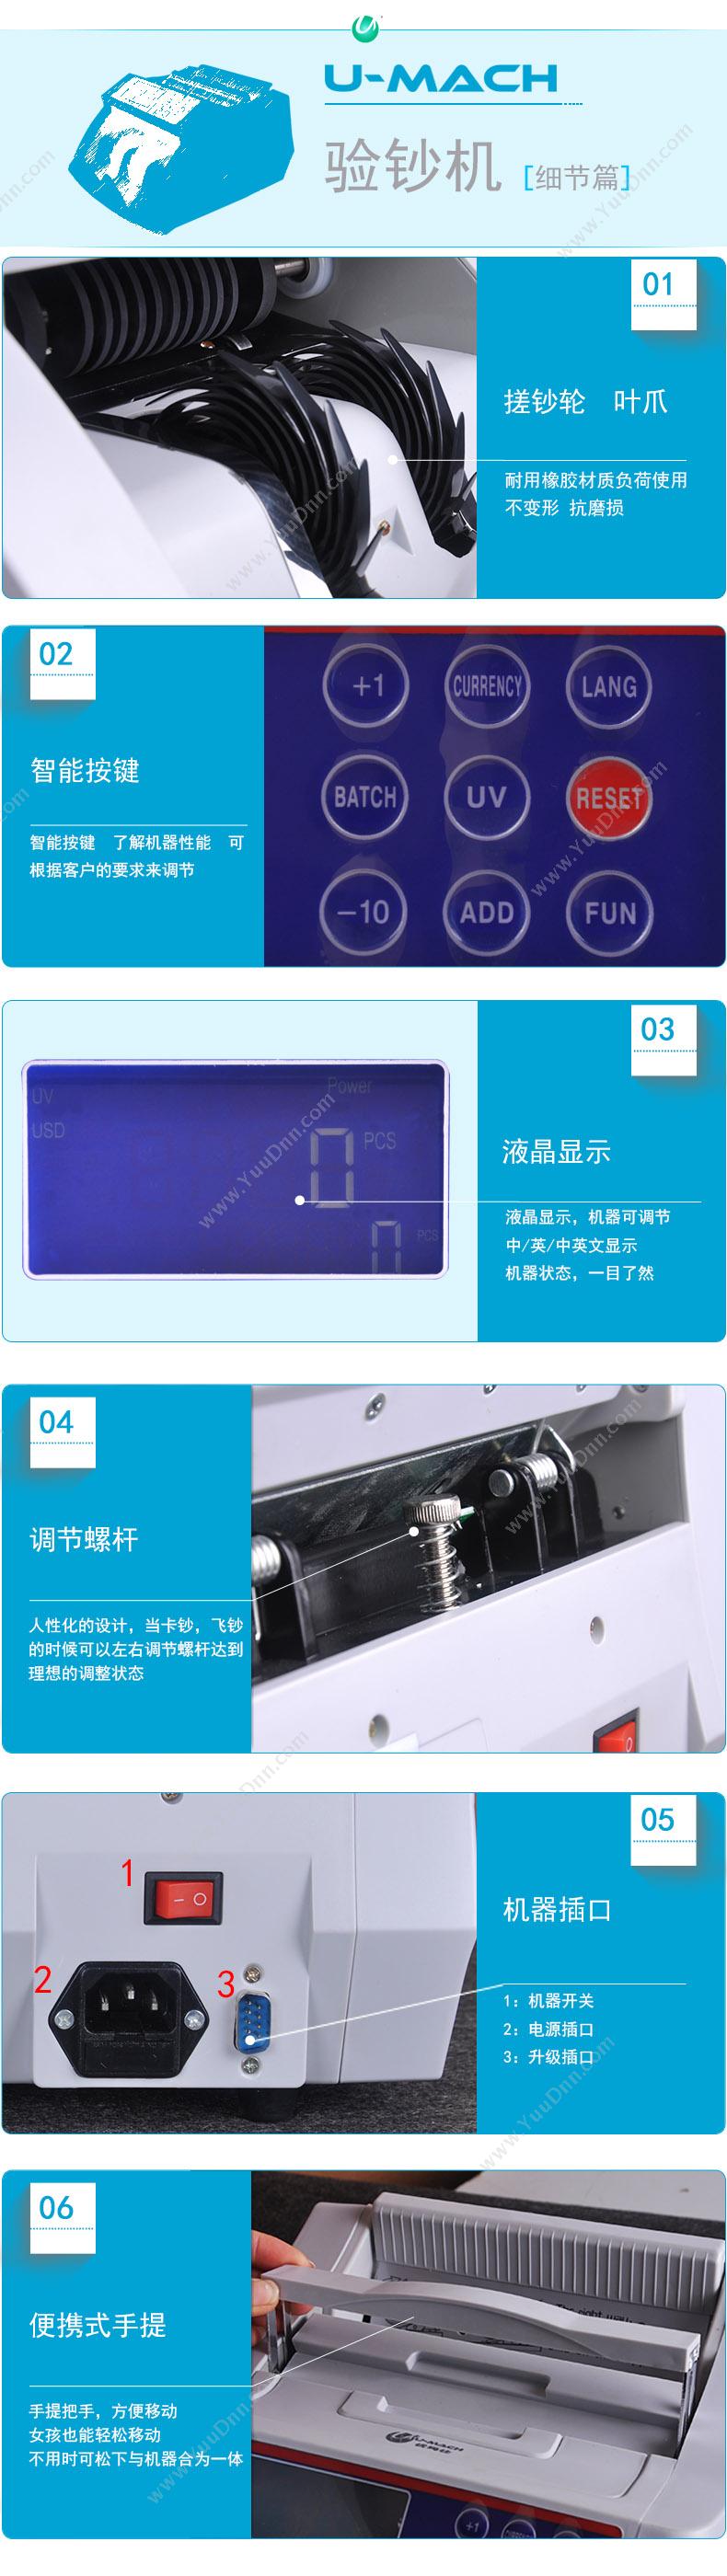 优玛仕 Umach JBYD-U989 外币  蓝白色 单屏点钞机